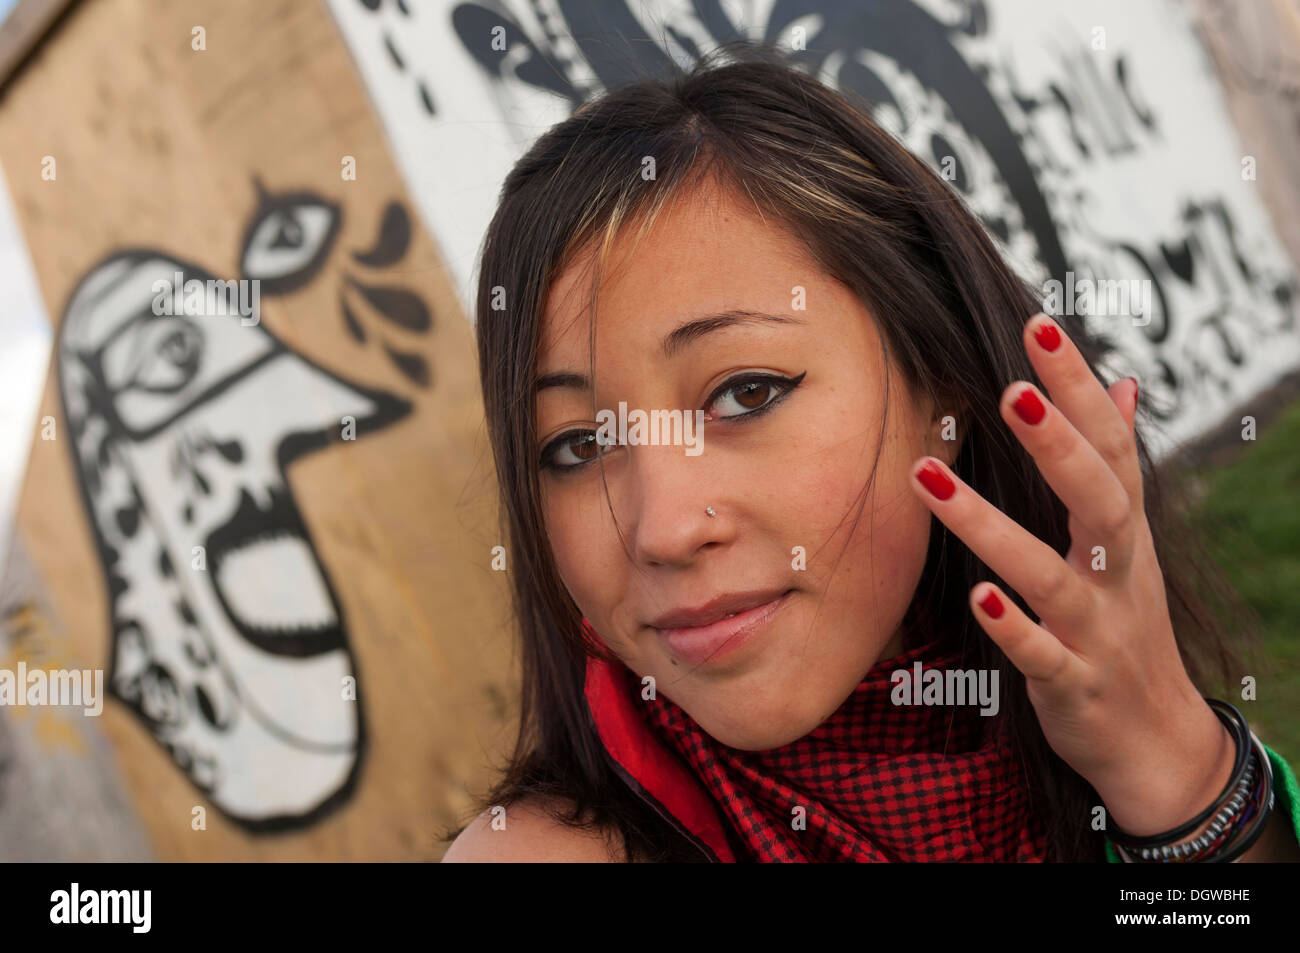 Une adolescente se tenait à côté de certains graffiti urbain looking at camera Banque D'Images